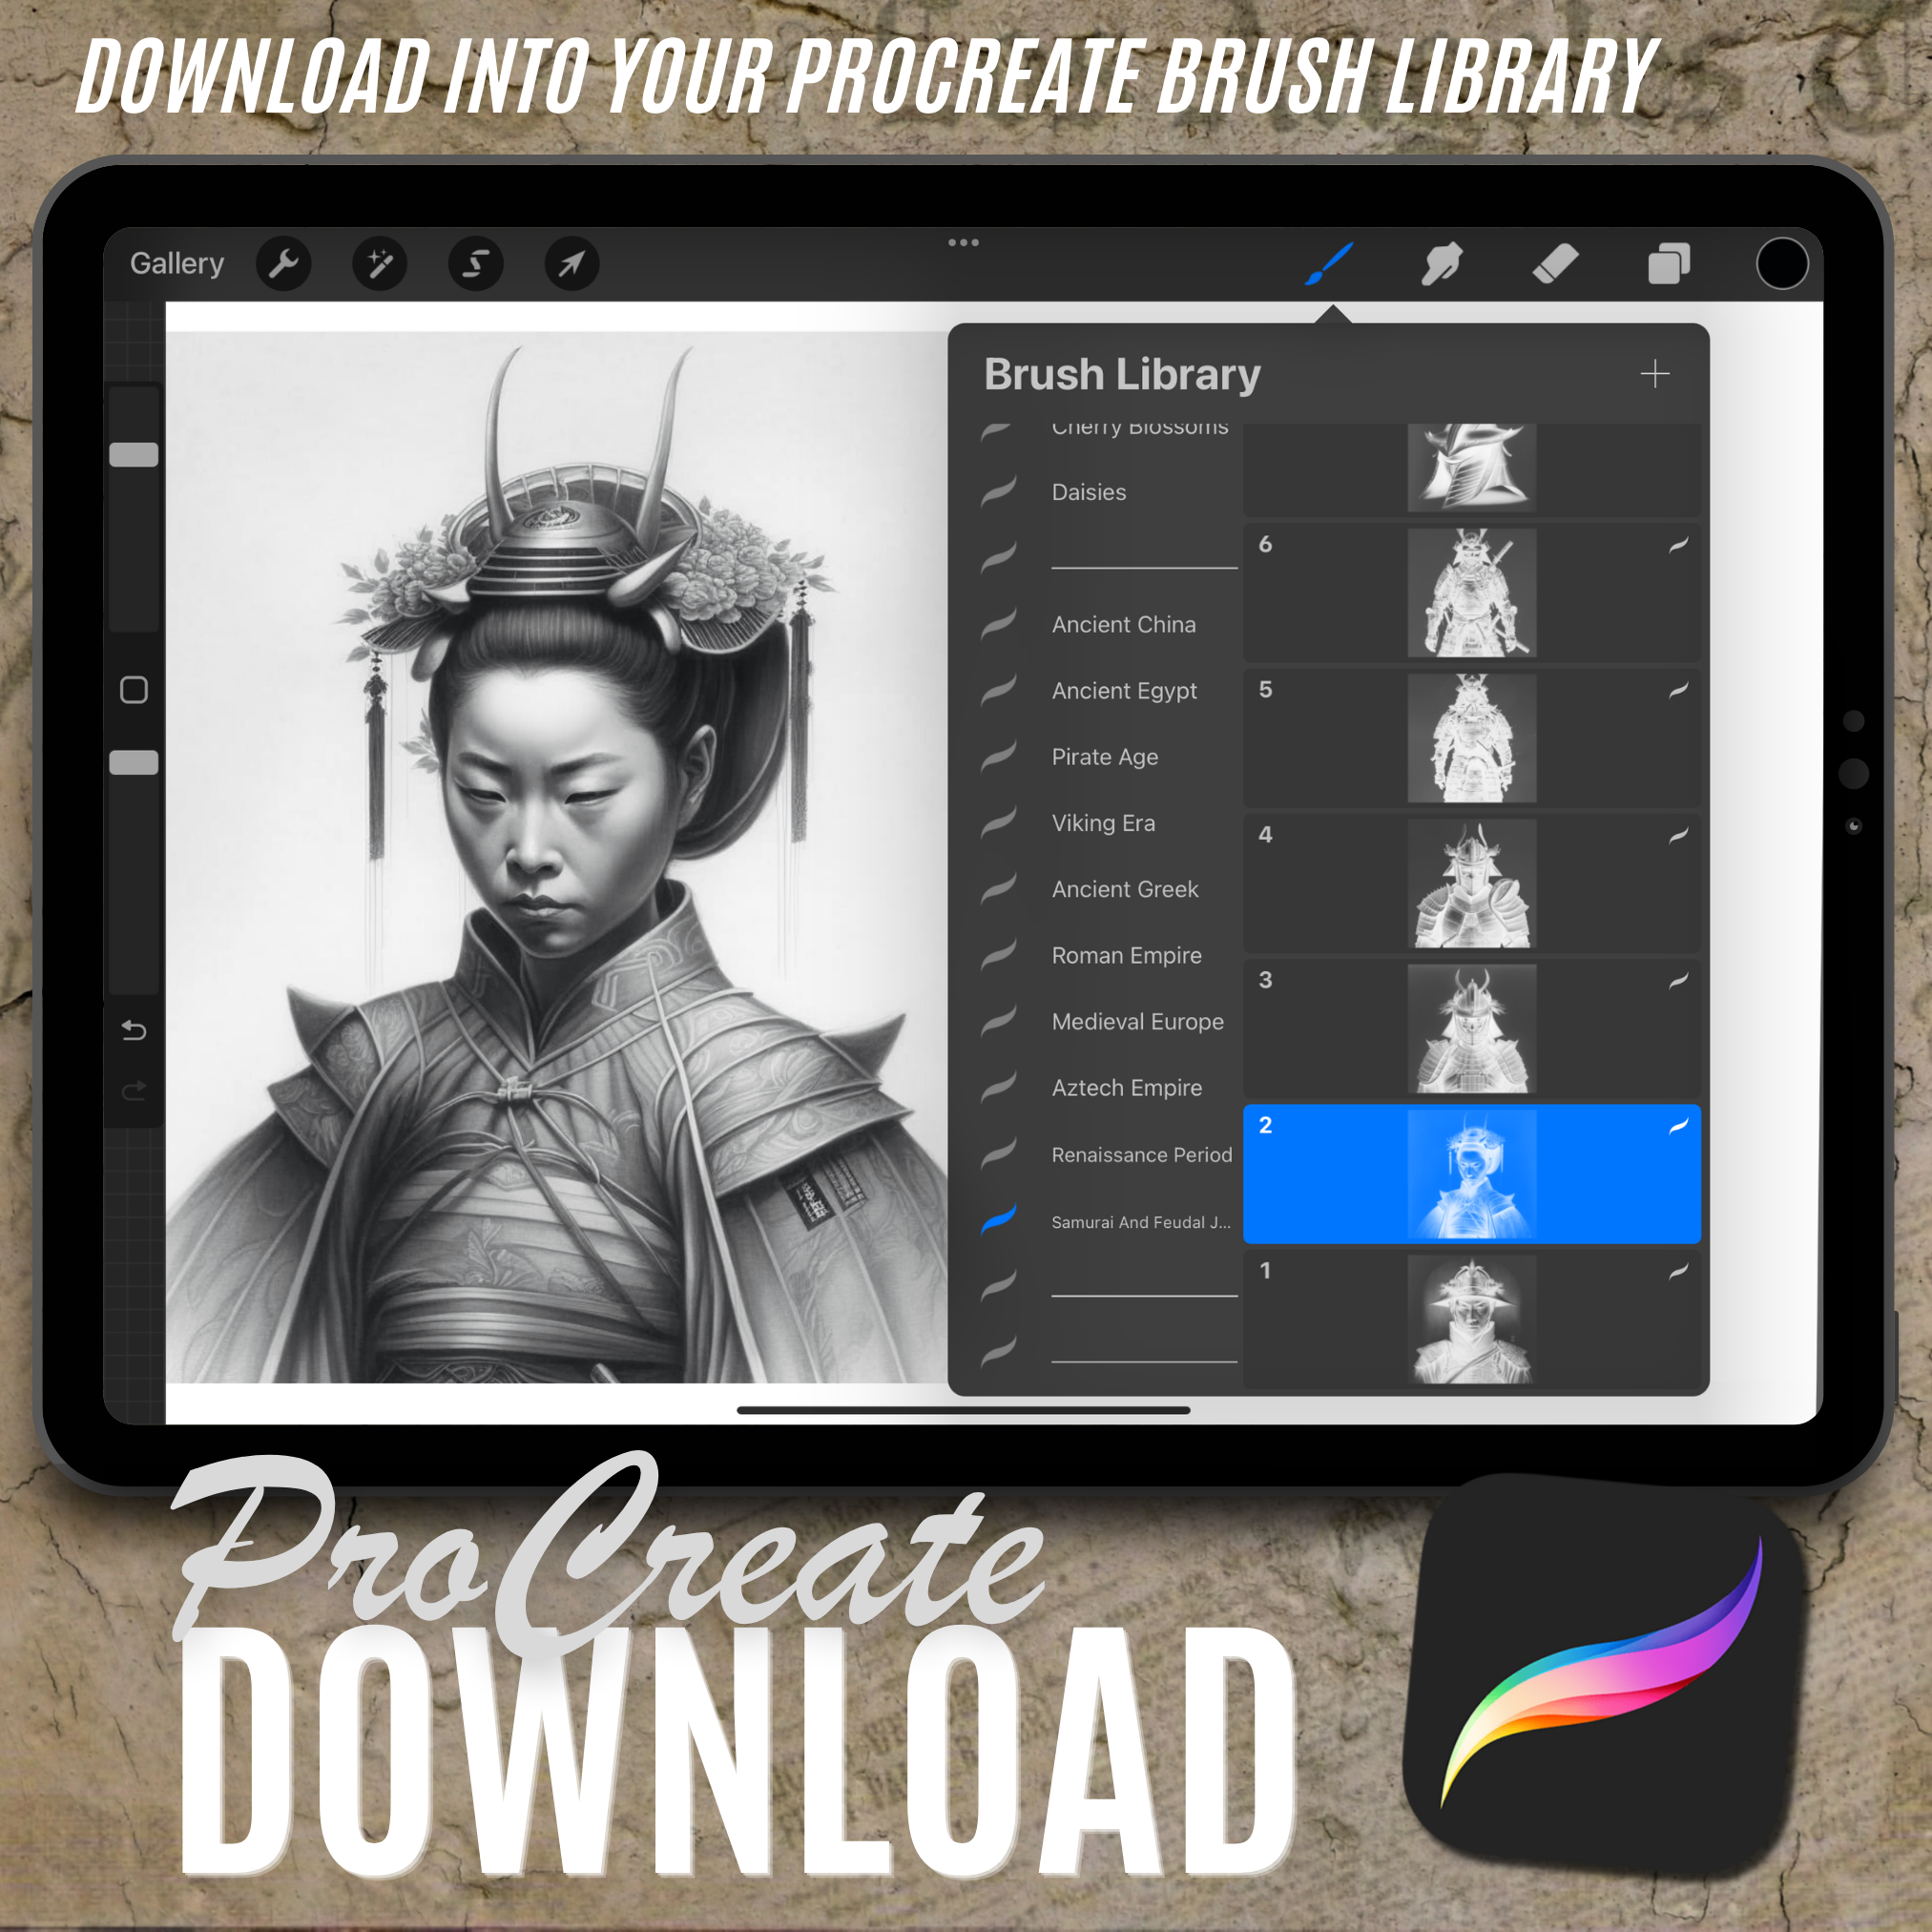 Digitale Designsammlung „Samurai und feudales Japan“: 100 Procreate- und Skizzenbuchbilder